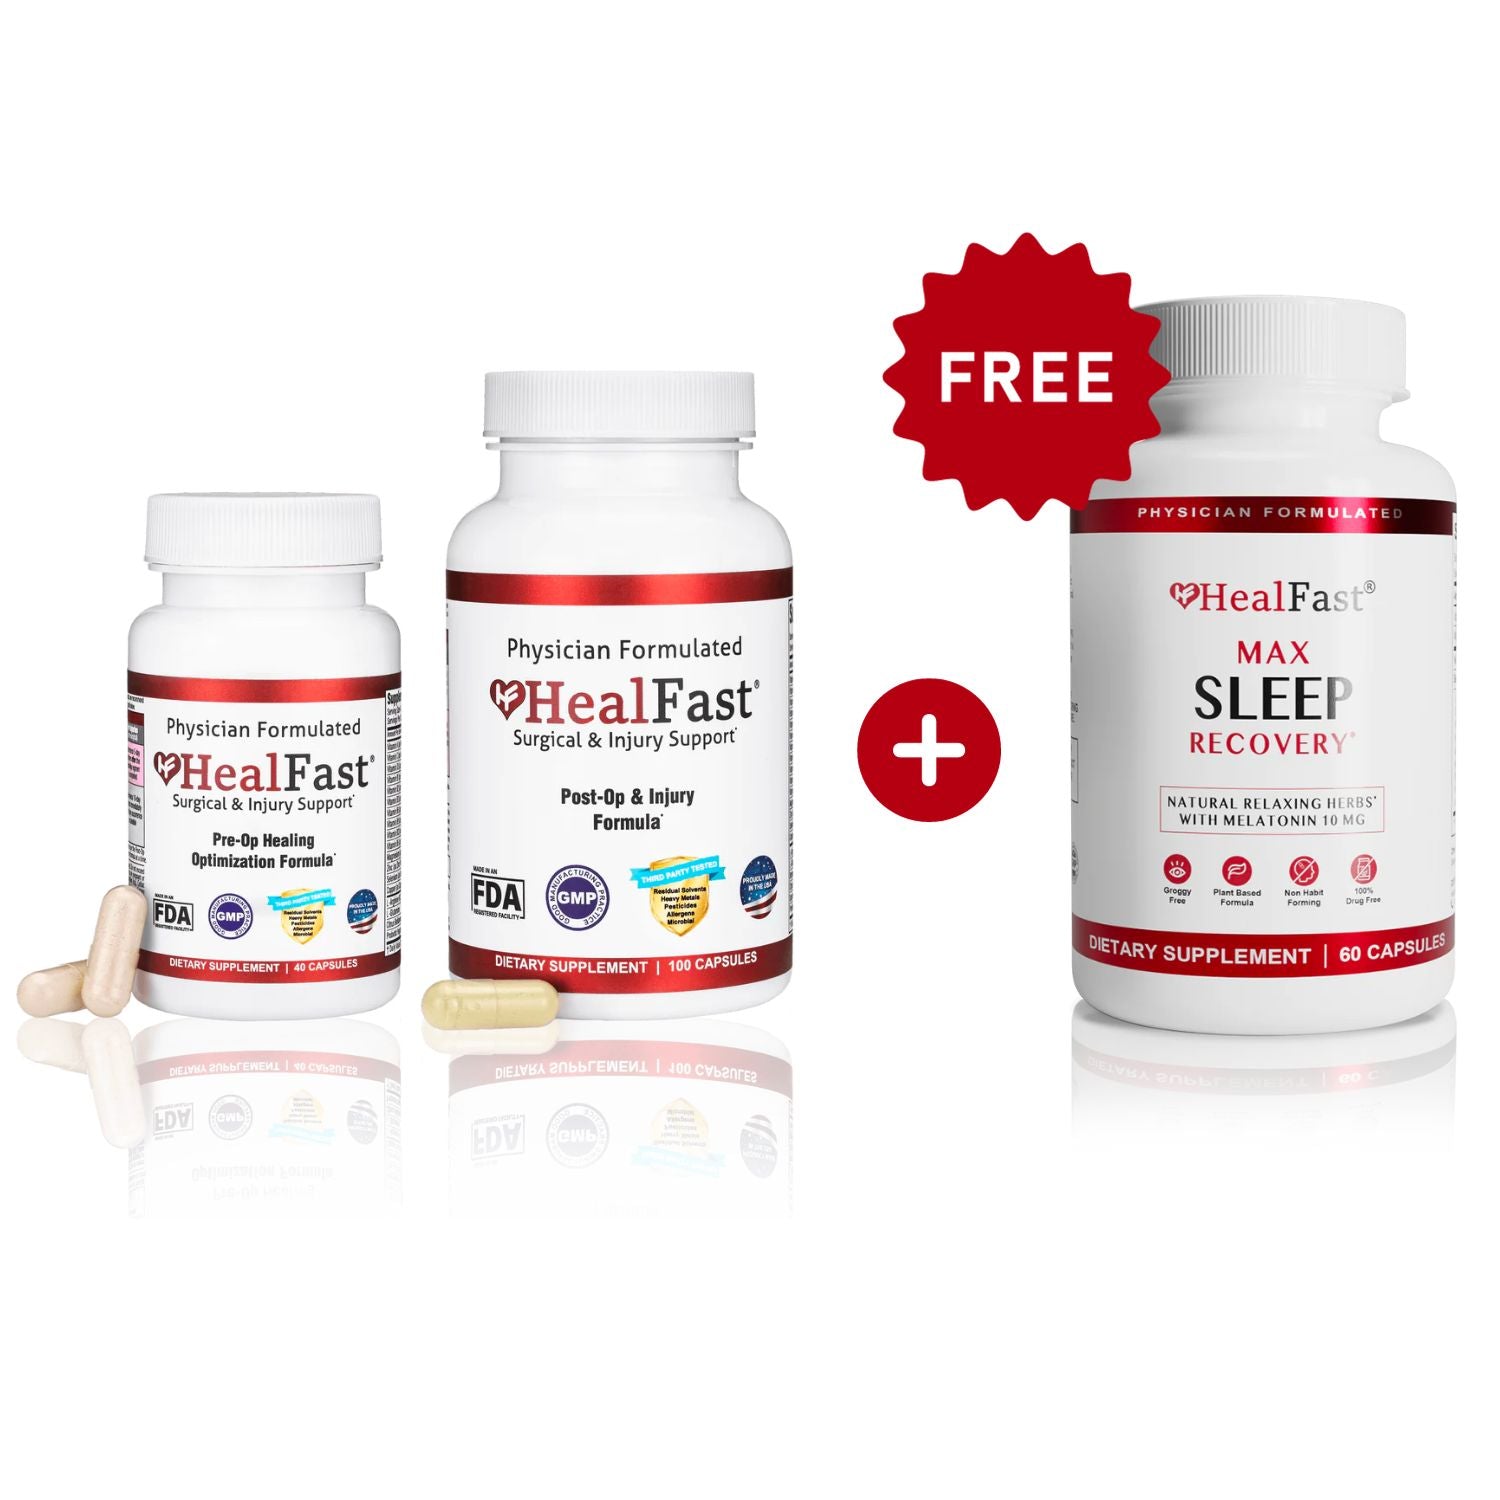 HealFast Complete Recovery + Sleep Bundle